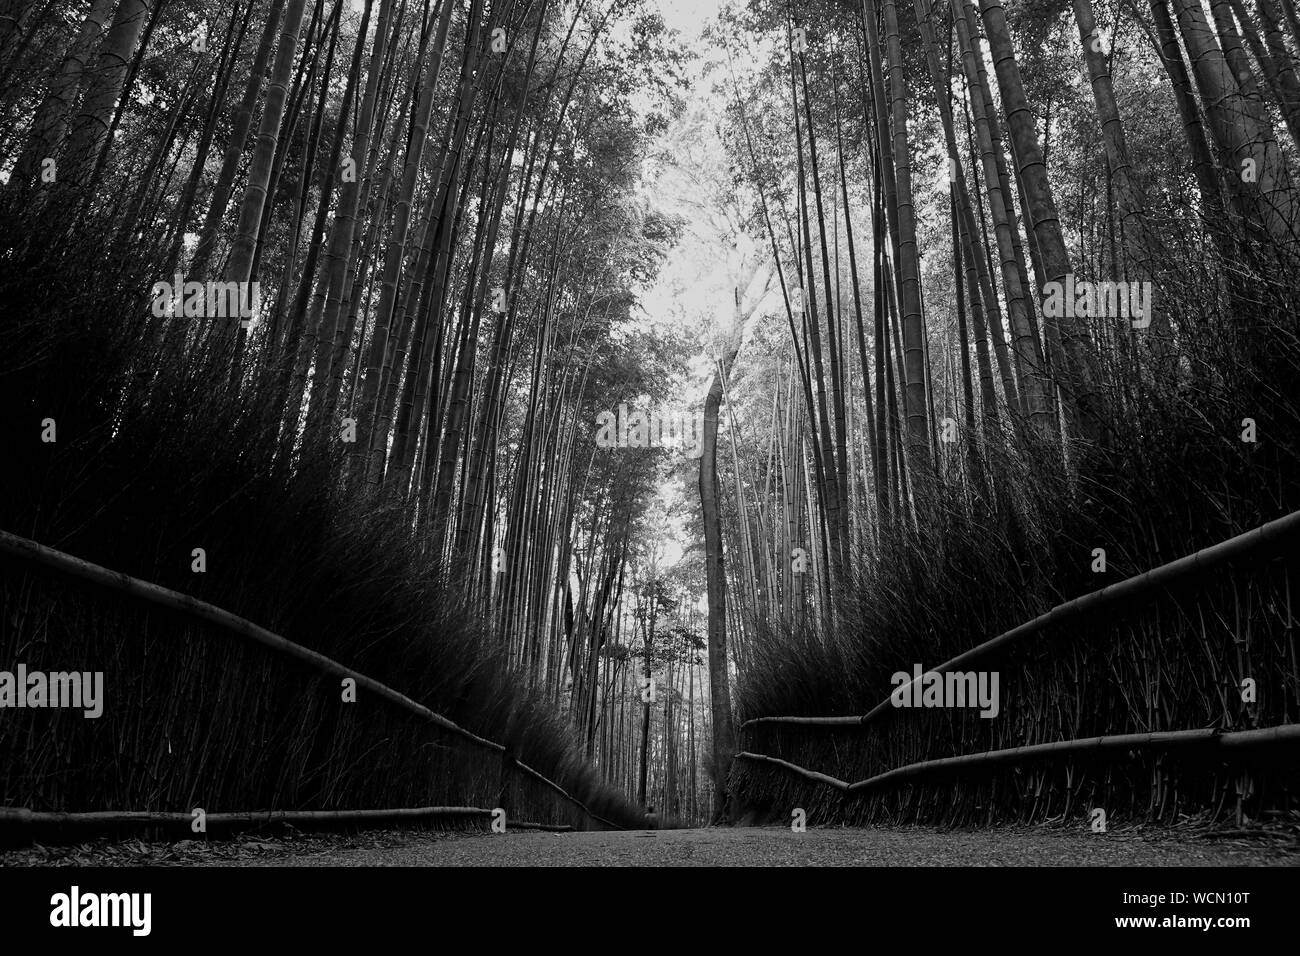 Bamboo forest in Arashiyama,Kyoto,Japan Stock Photo